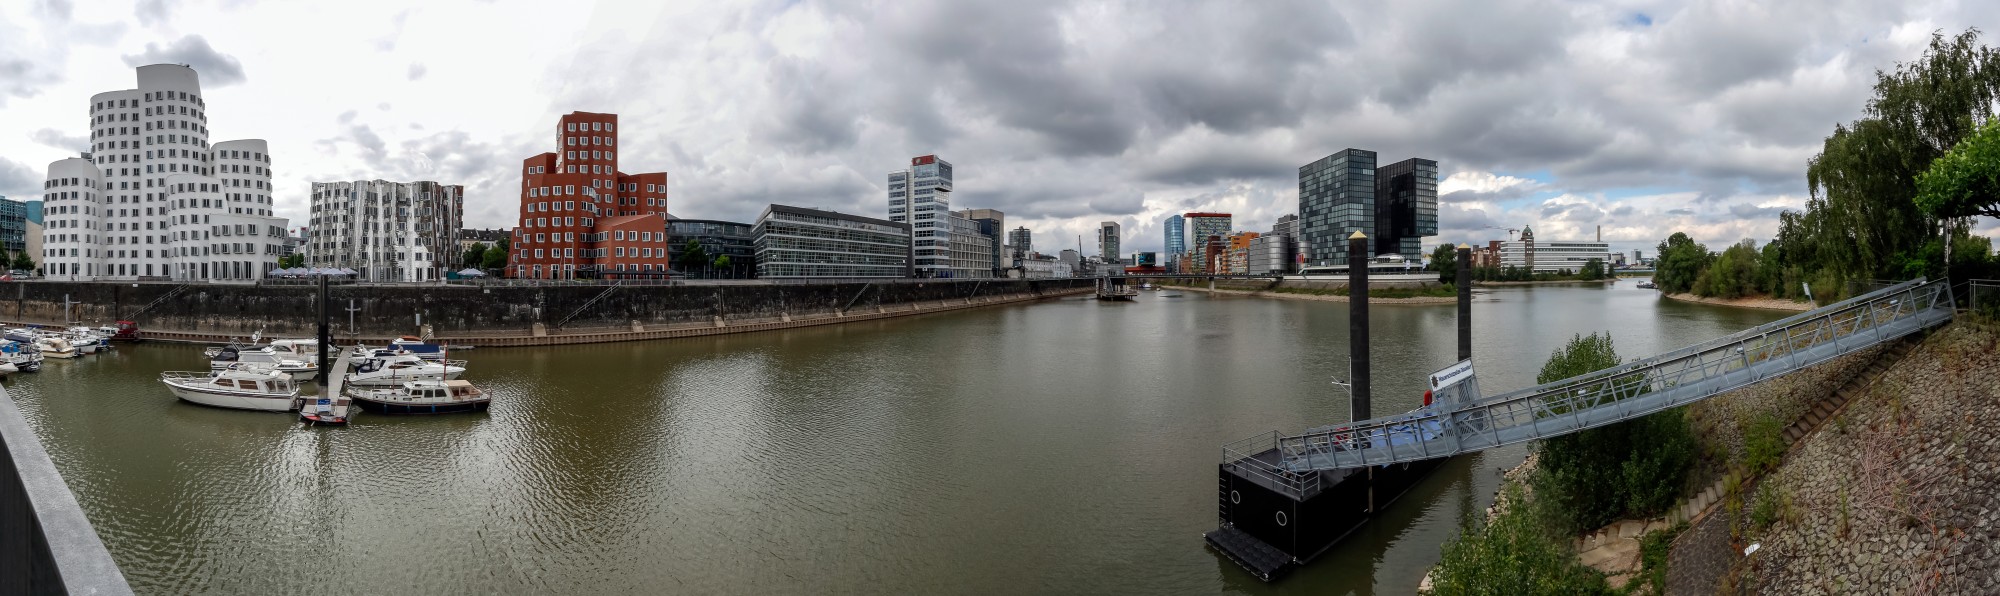 Düsseldorf, Medienhafen -- 2015 -- 8143-7